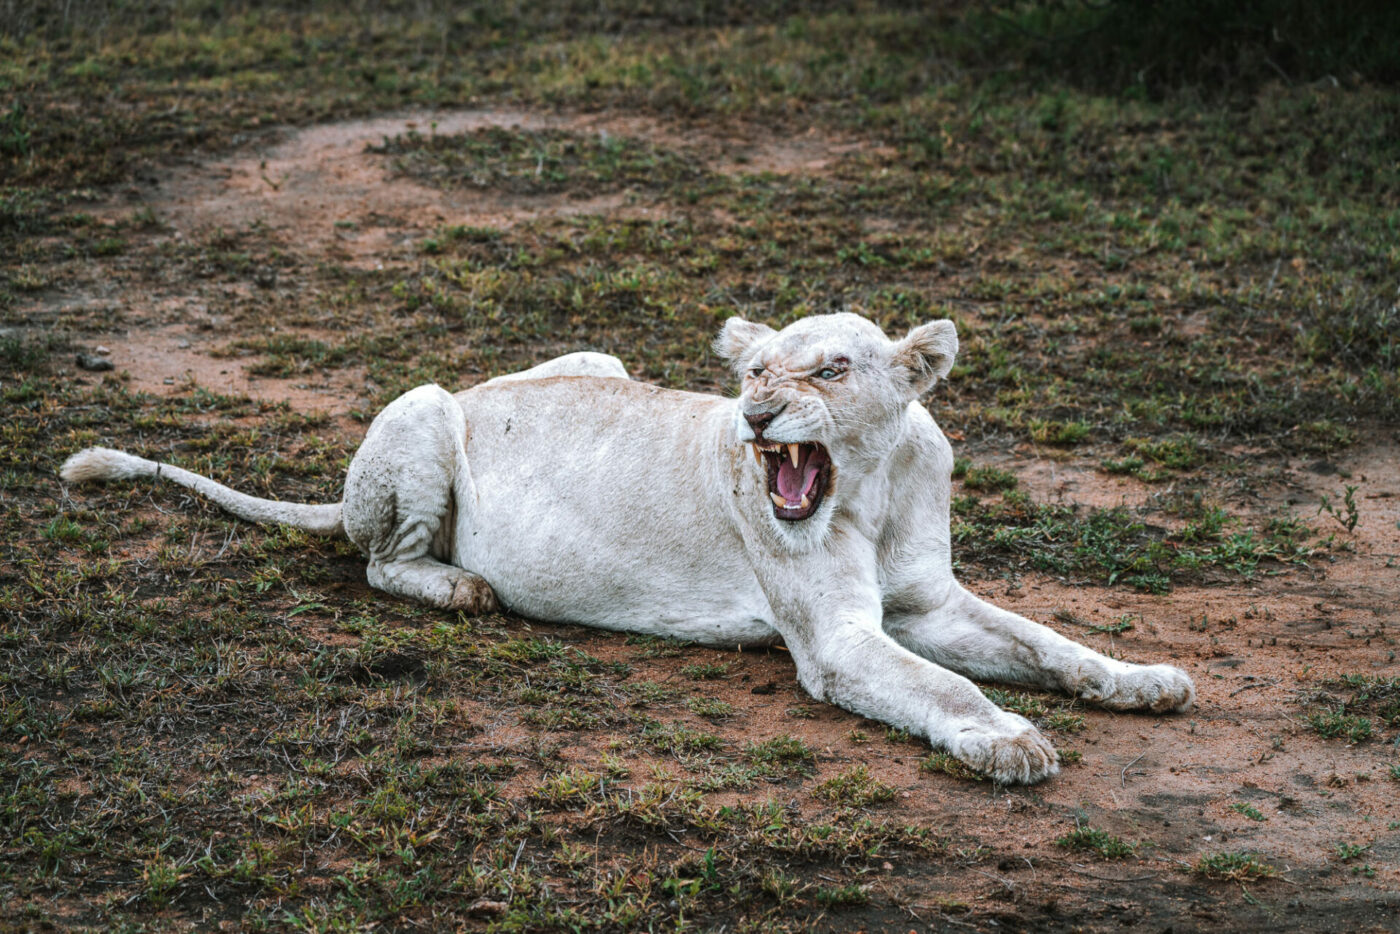 South Africa Kruger andBeyond Ngala safari lion 01759